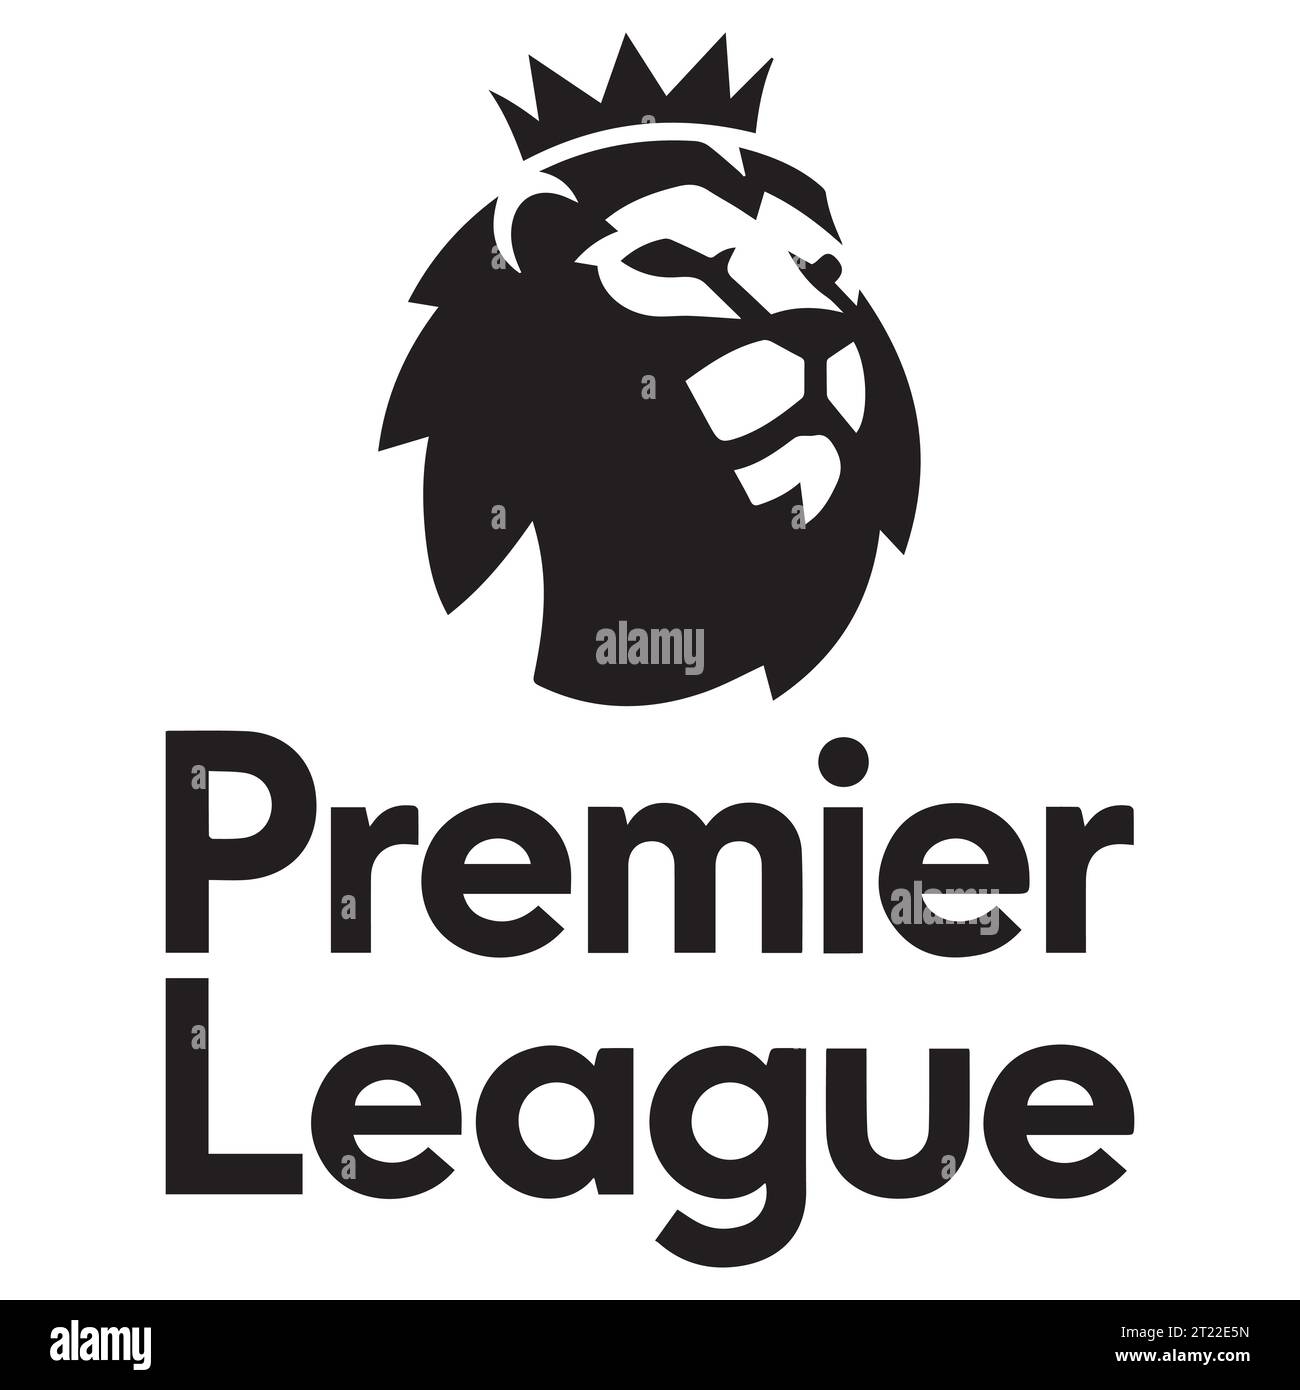 Premier League Logo in bianco e nero sistema di campionato di calcio professionistico in Inghilterra, illustrazione vettoriale immagine astratta in bianco e nero modificabile Illustrazione Vettoriale